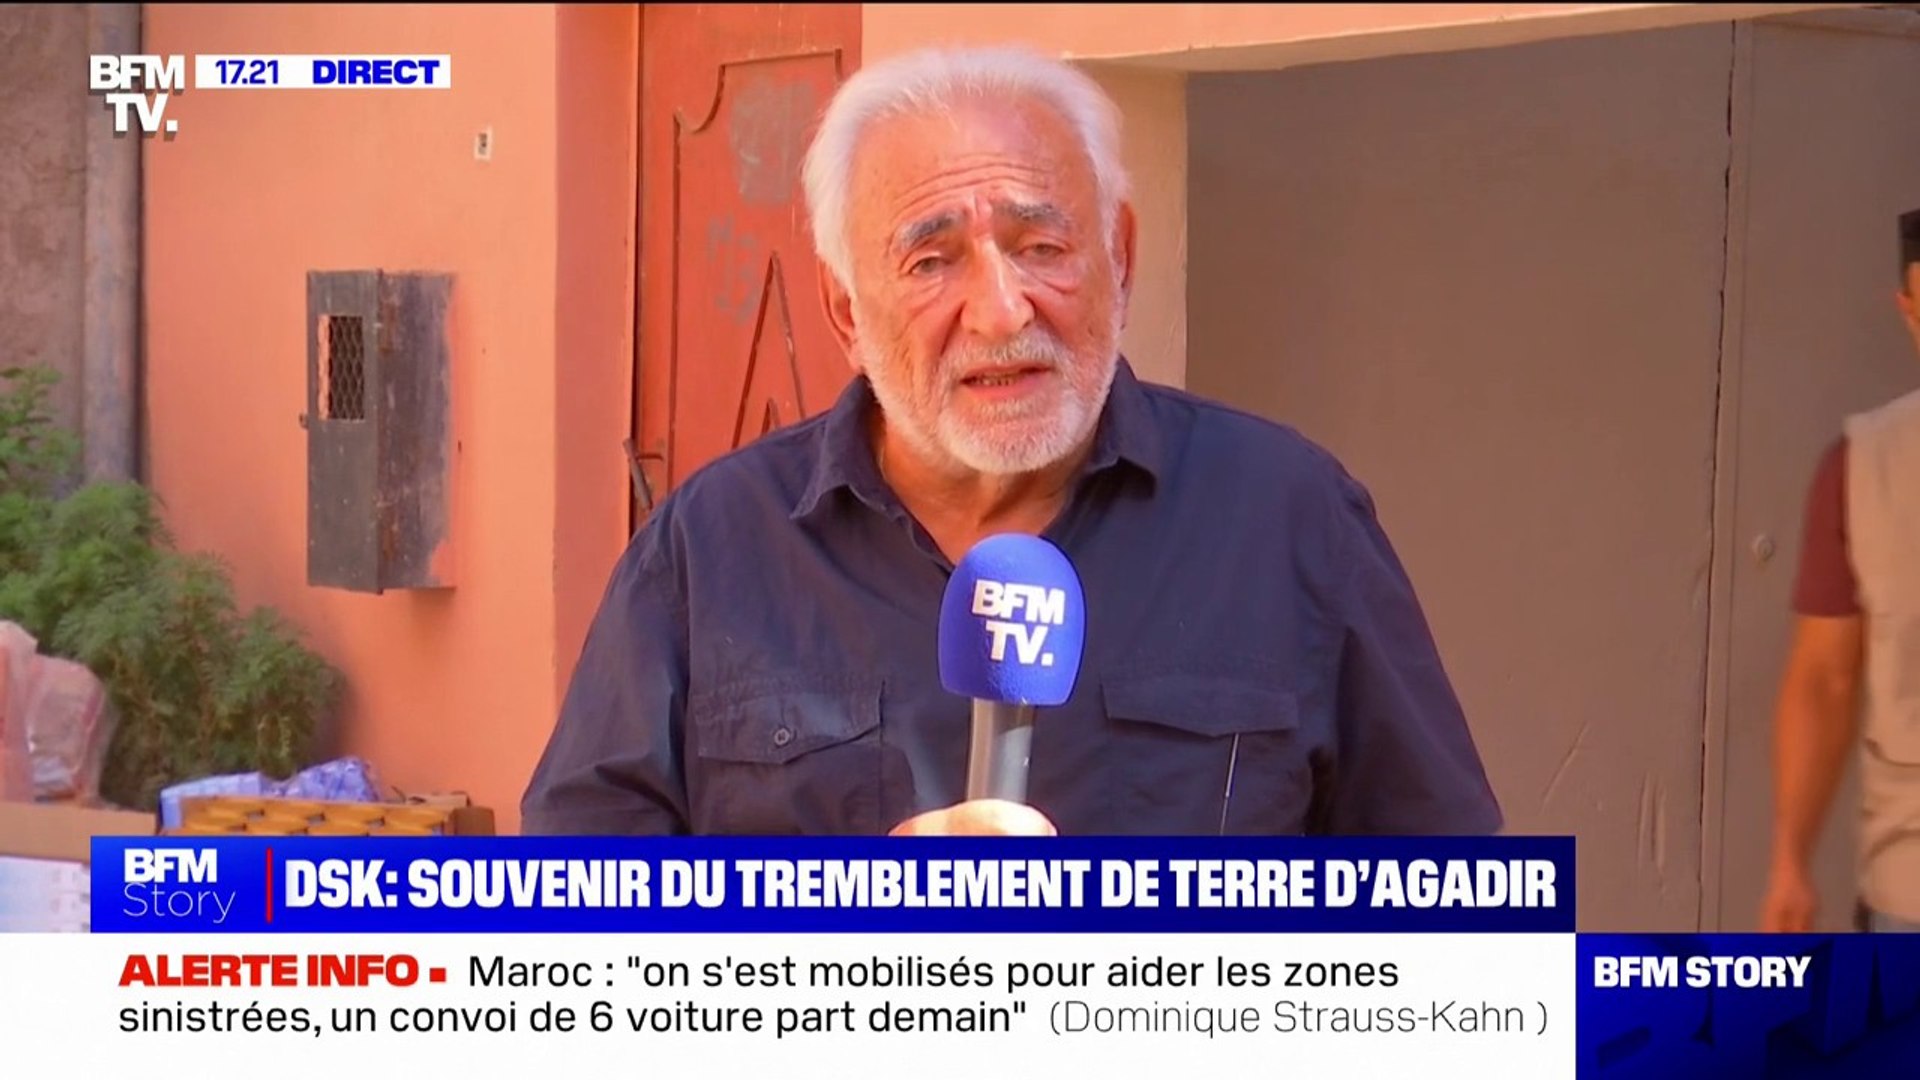 Dominique Strauss-Kahn: "Je n'étais pas là lors du tremblement de terre  d'il y a quelques jours au Maroc, mais j'ai vécu quand j'étais jeune le  tremblement de terre d'Agadir et j'ai des